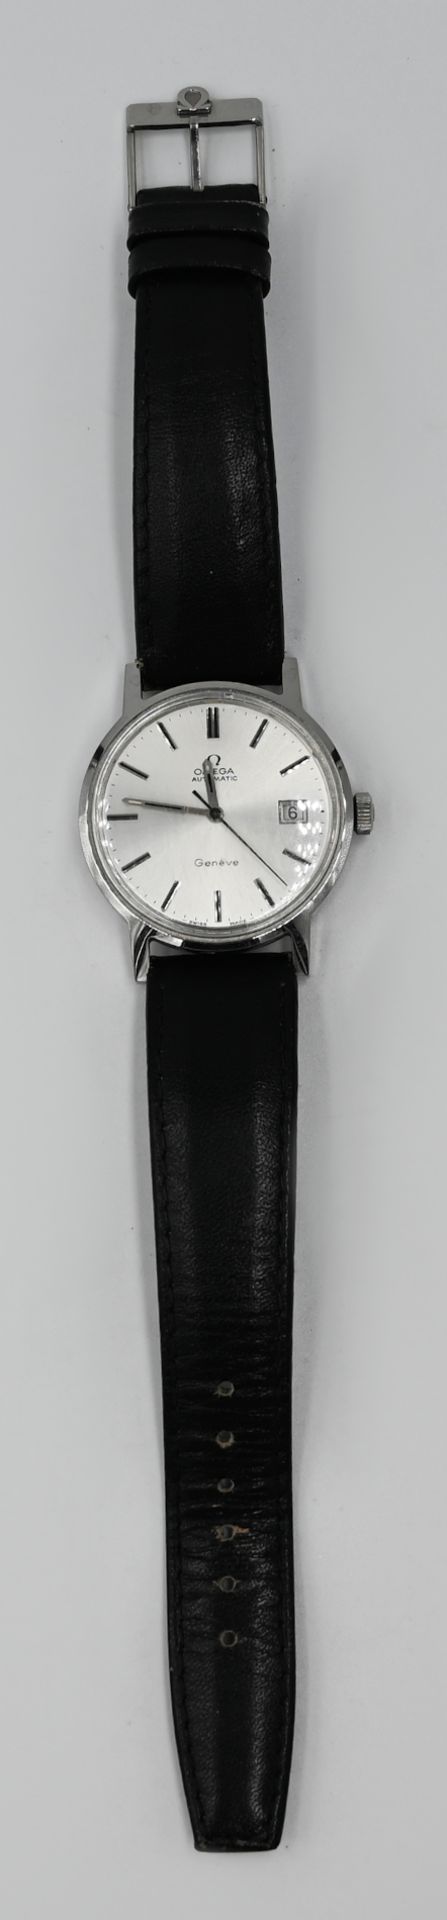 1 Herrenarmbanduhr OMEGA Edelstahl, Automatic, mit Originallederband, Uhr läuft an, Asp./ Gsp.